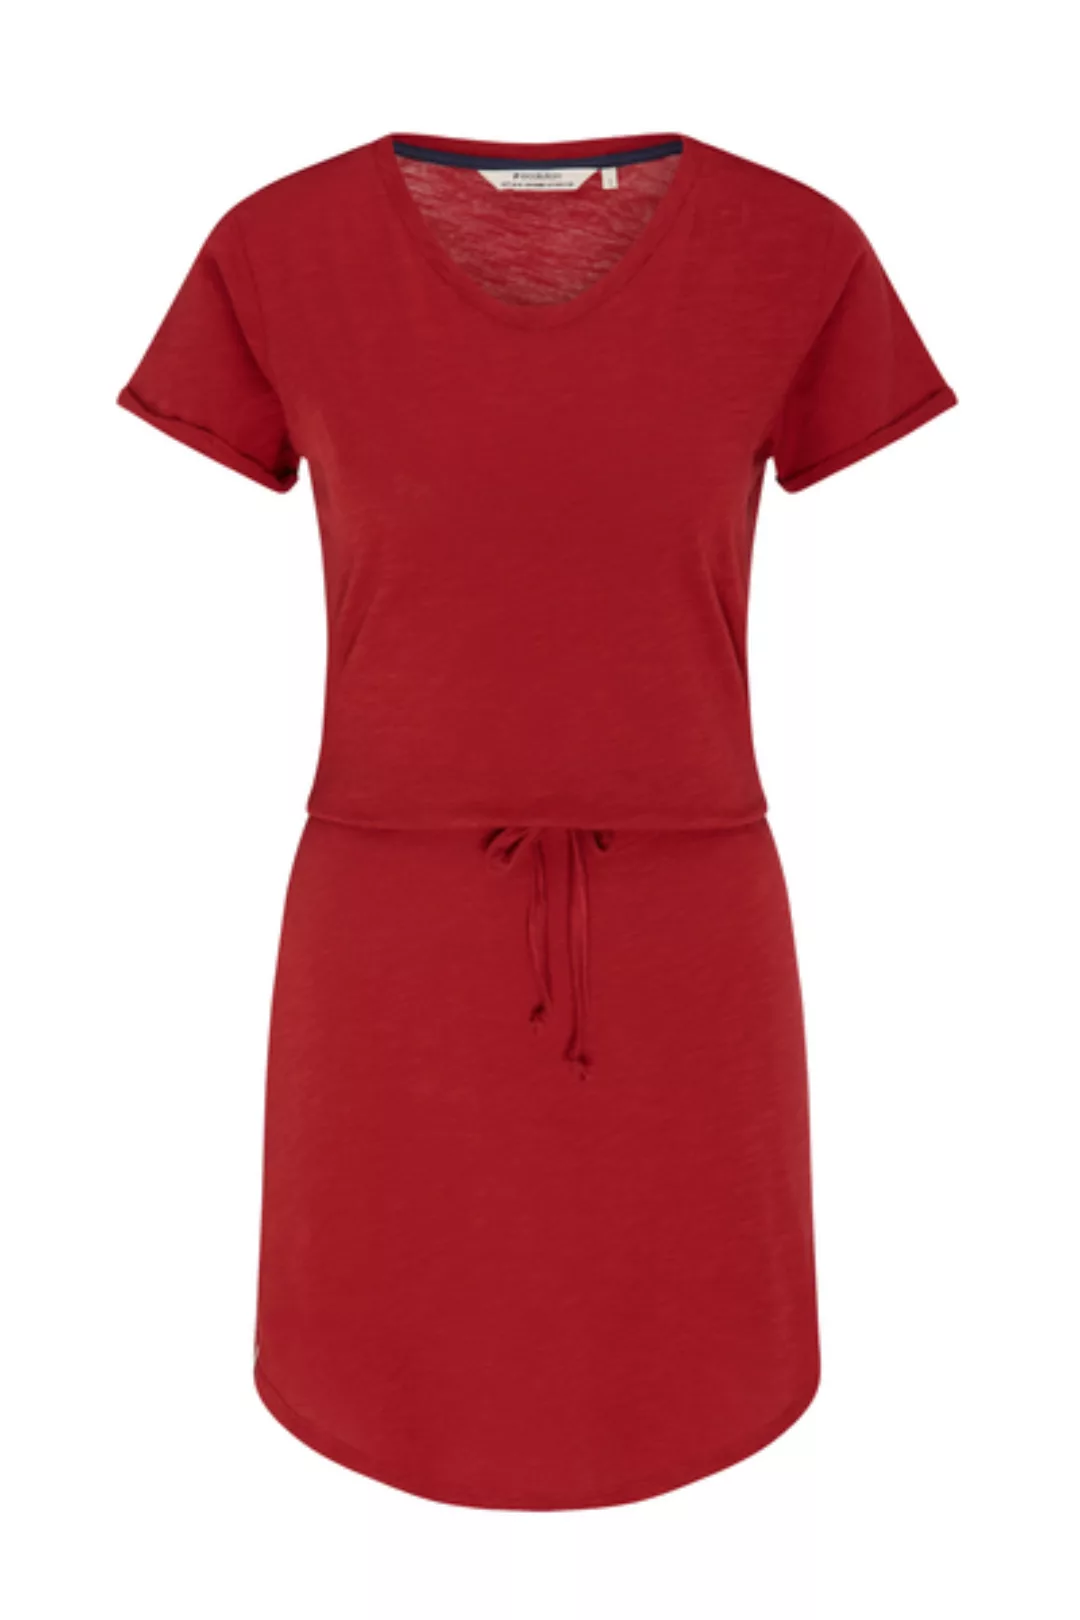 Jerseykleid Basic Rot günstig online kaufen